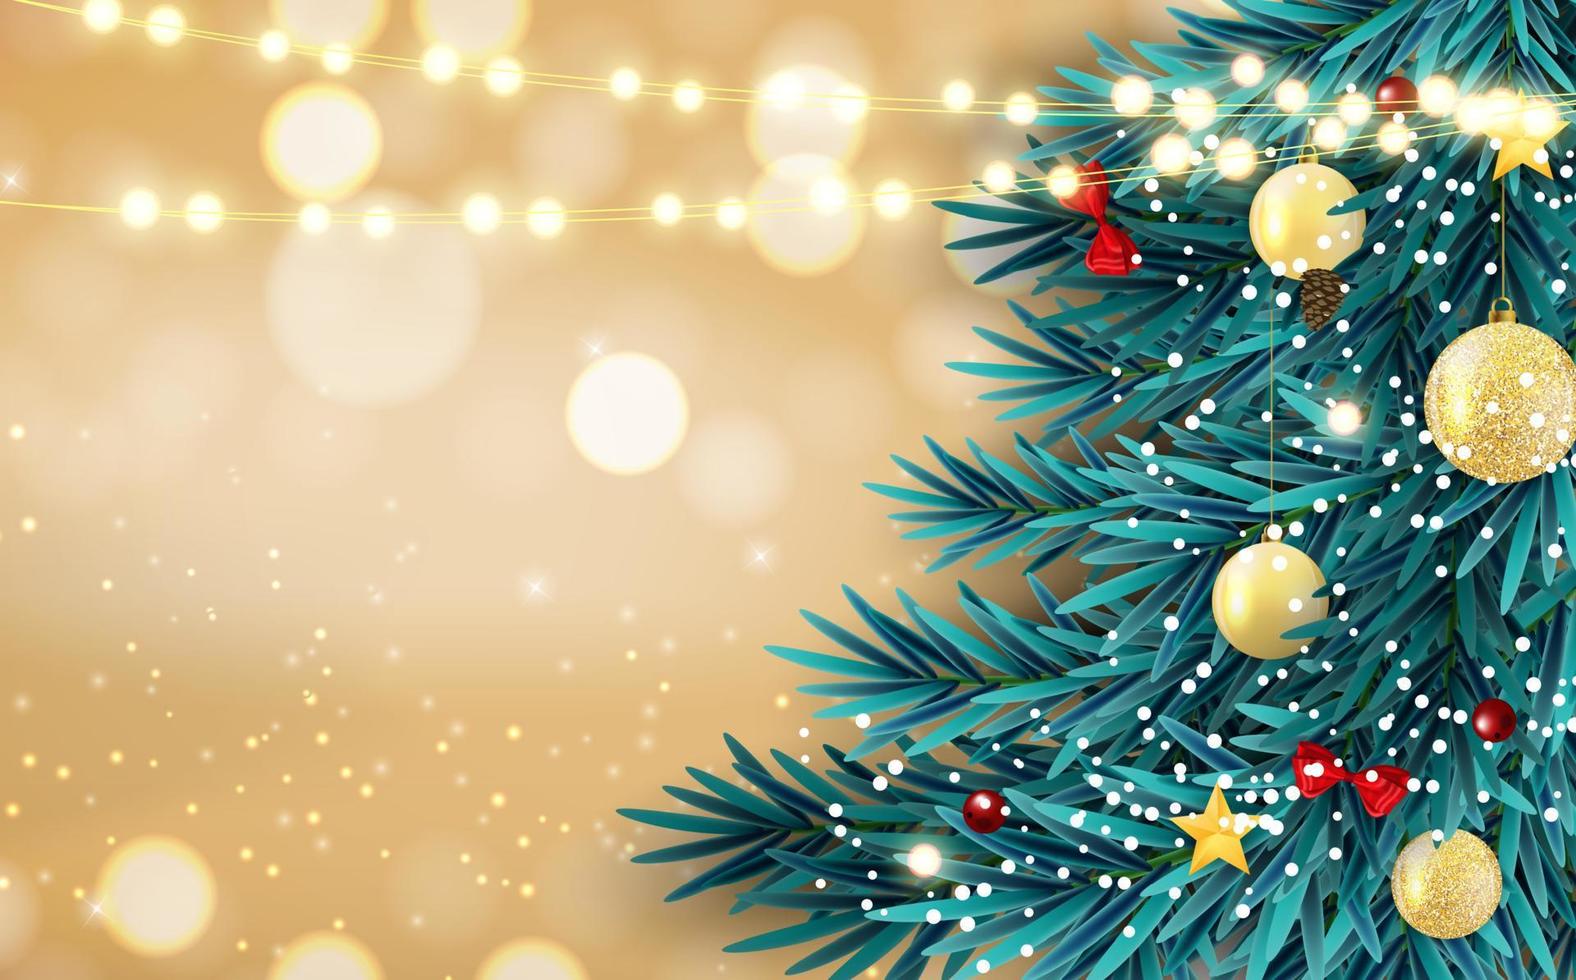 abstrakter Feiertagsneues Jahr und Hintergrund der frohen Weihnachten mit realistischem Weihnachtsbaum. Vektor-Illustration vektor